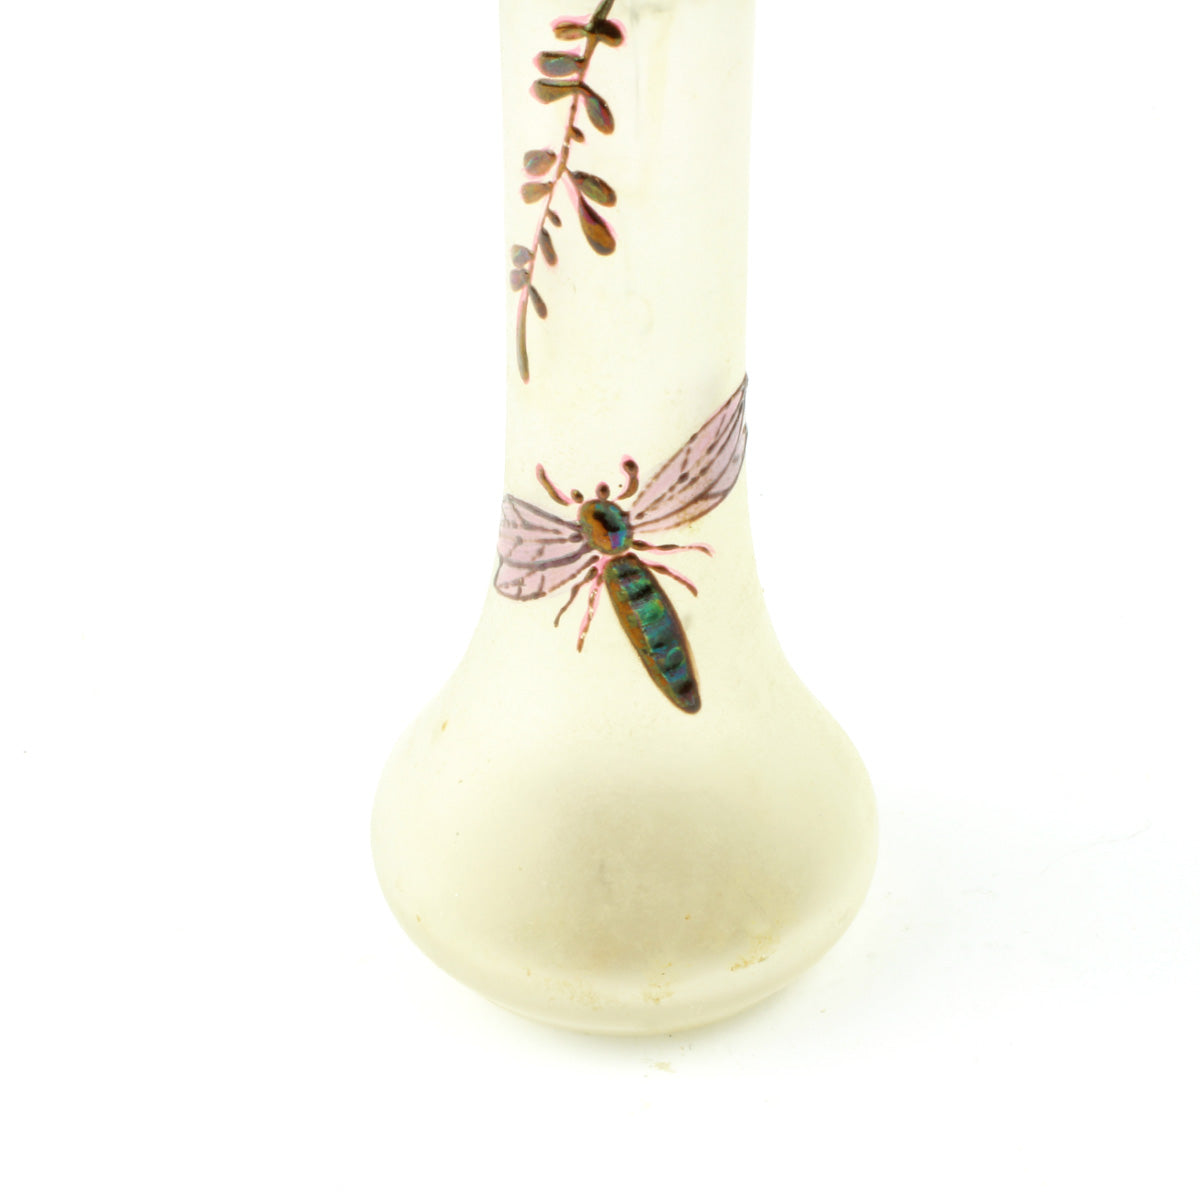 Vasen er i mundblæst glas med sandblæst overflade